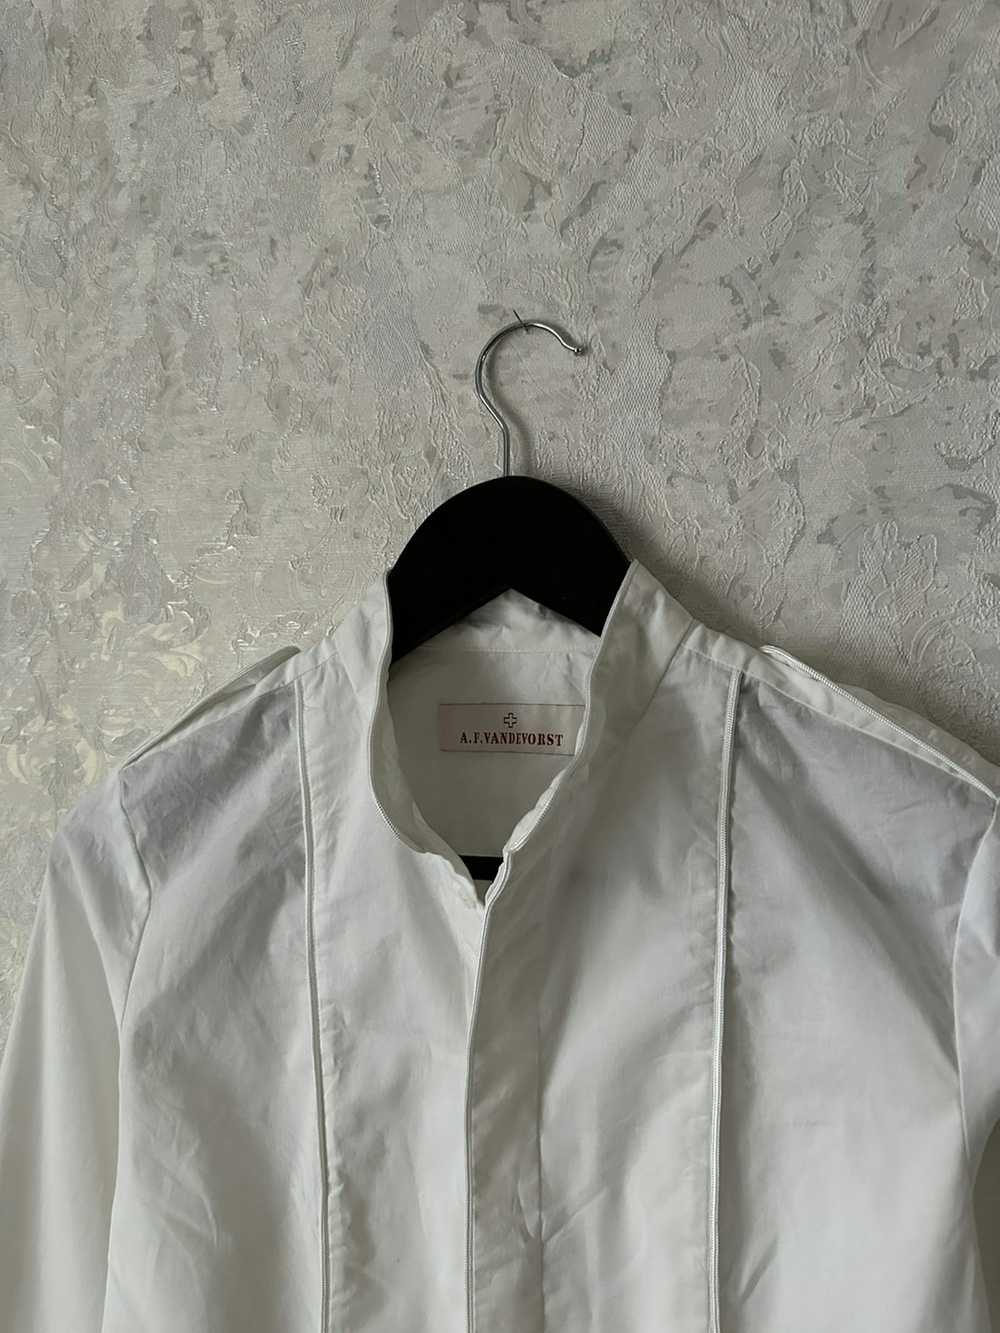 A.F. Vandevorst A.F VANDEVORST white shirt - image 2